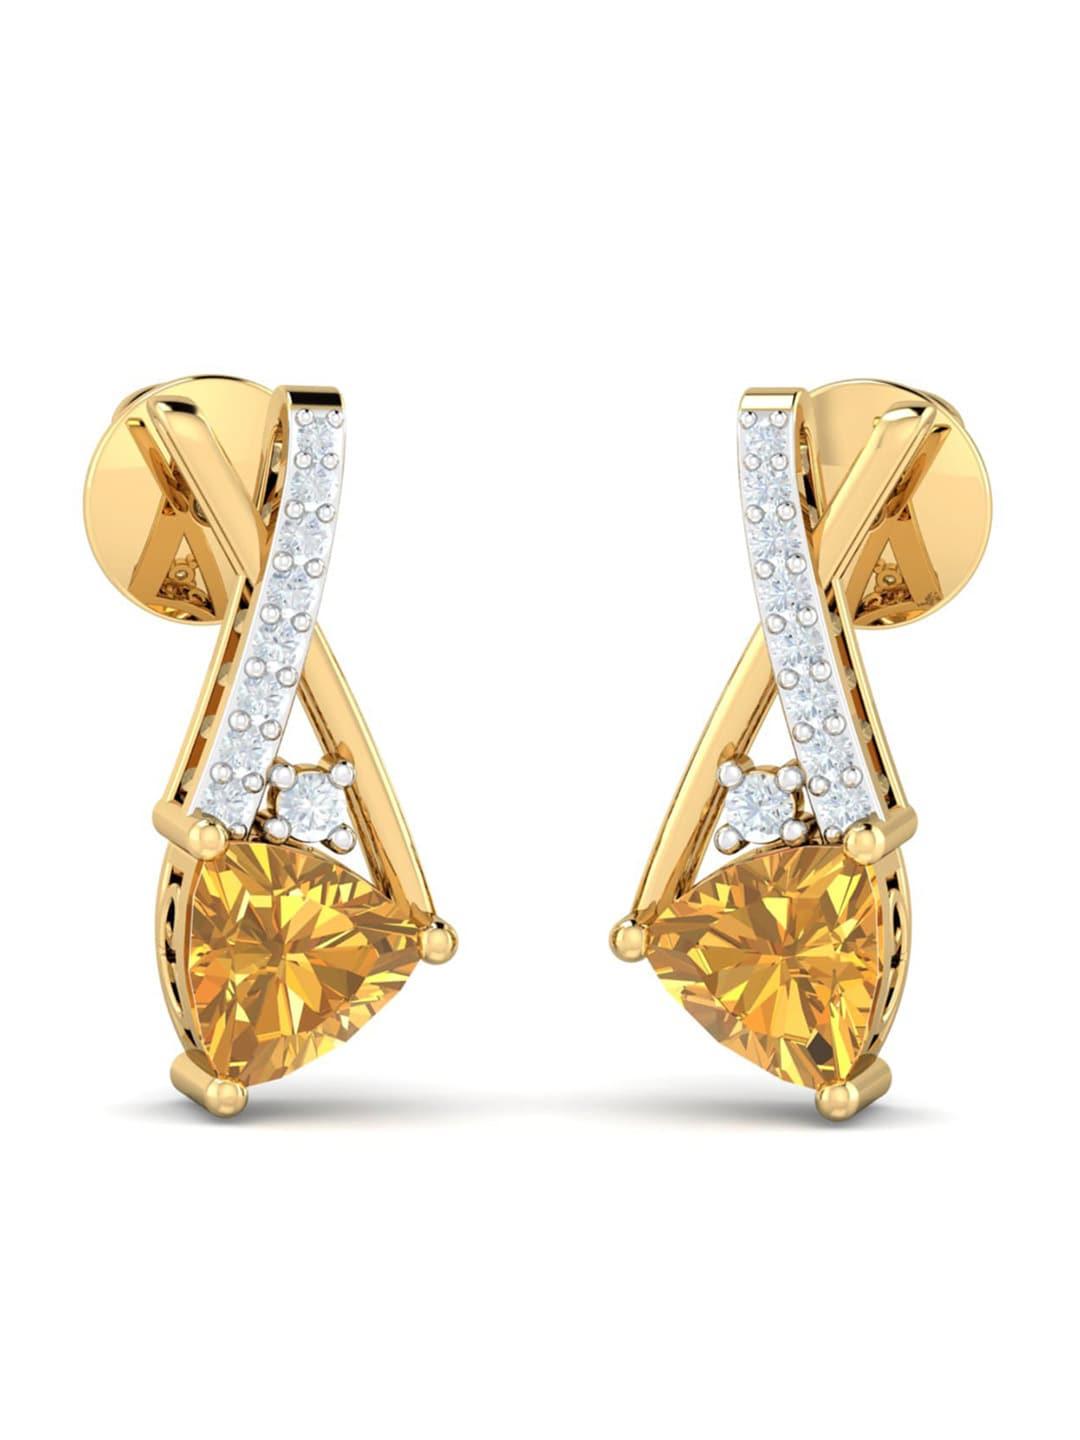 KUBERBOX Citrine Emine 18KT Gold Diamond-Studded & Citrine Earrings - 2.07gm